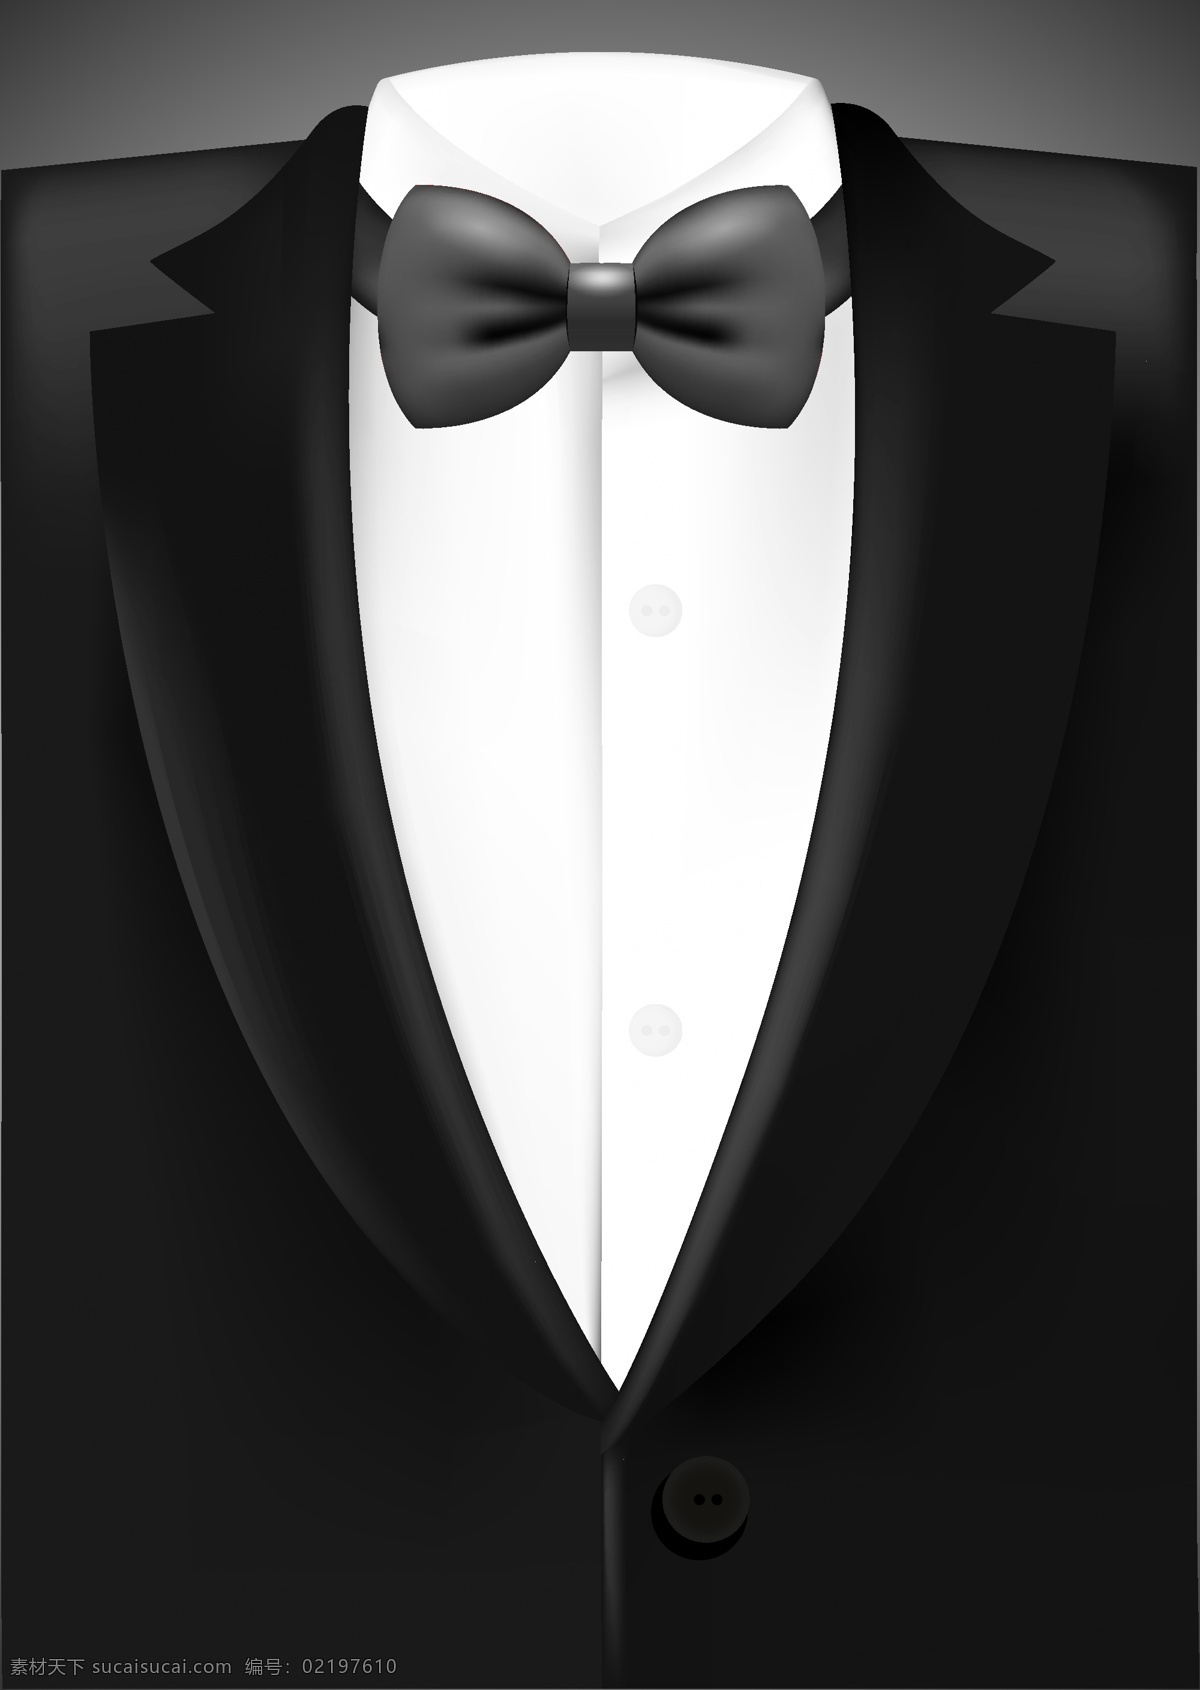 黑色 西服 衬衫 矢量 模板下载 衬衣 西装 男性服饰 男性西服 领结 珠宝服饰 生活百科 矢量素材